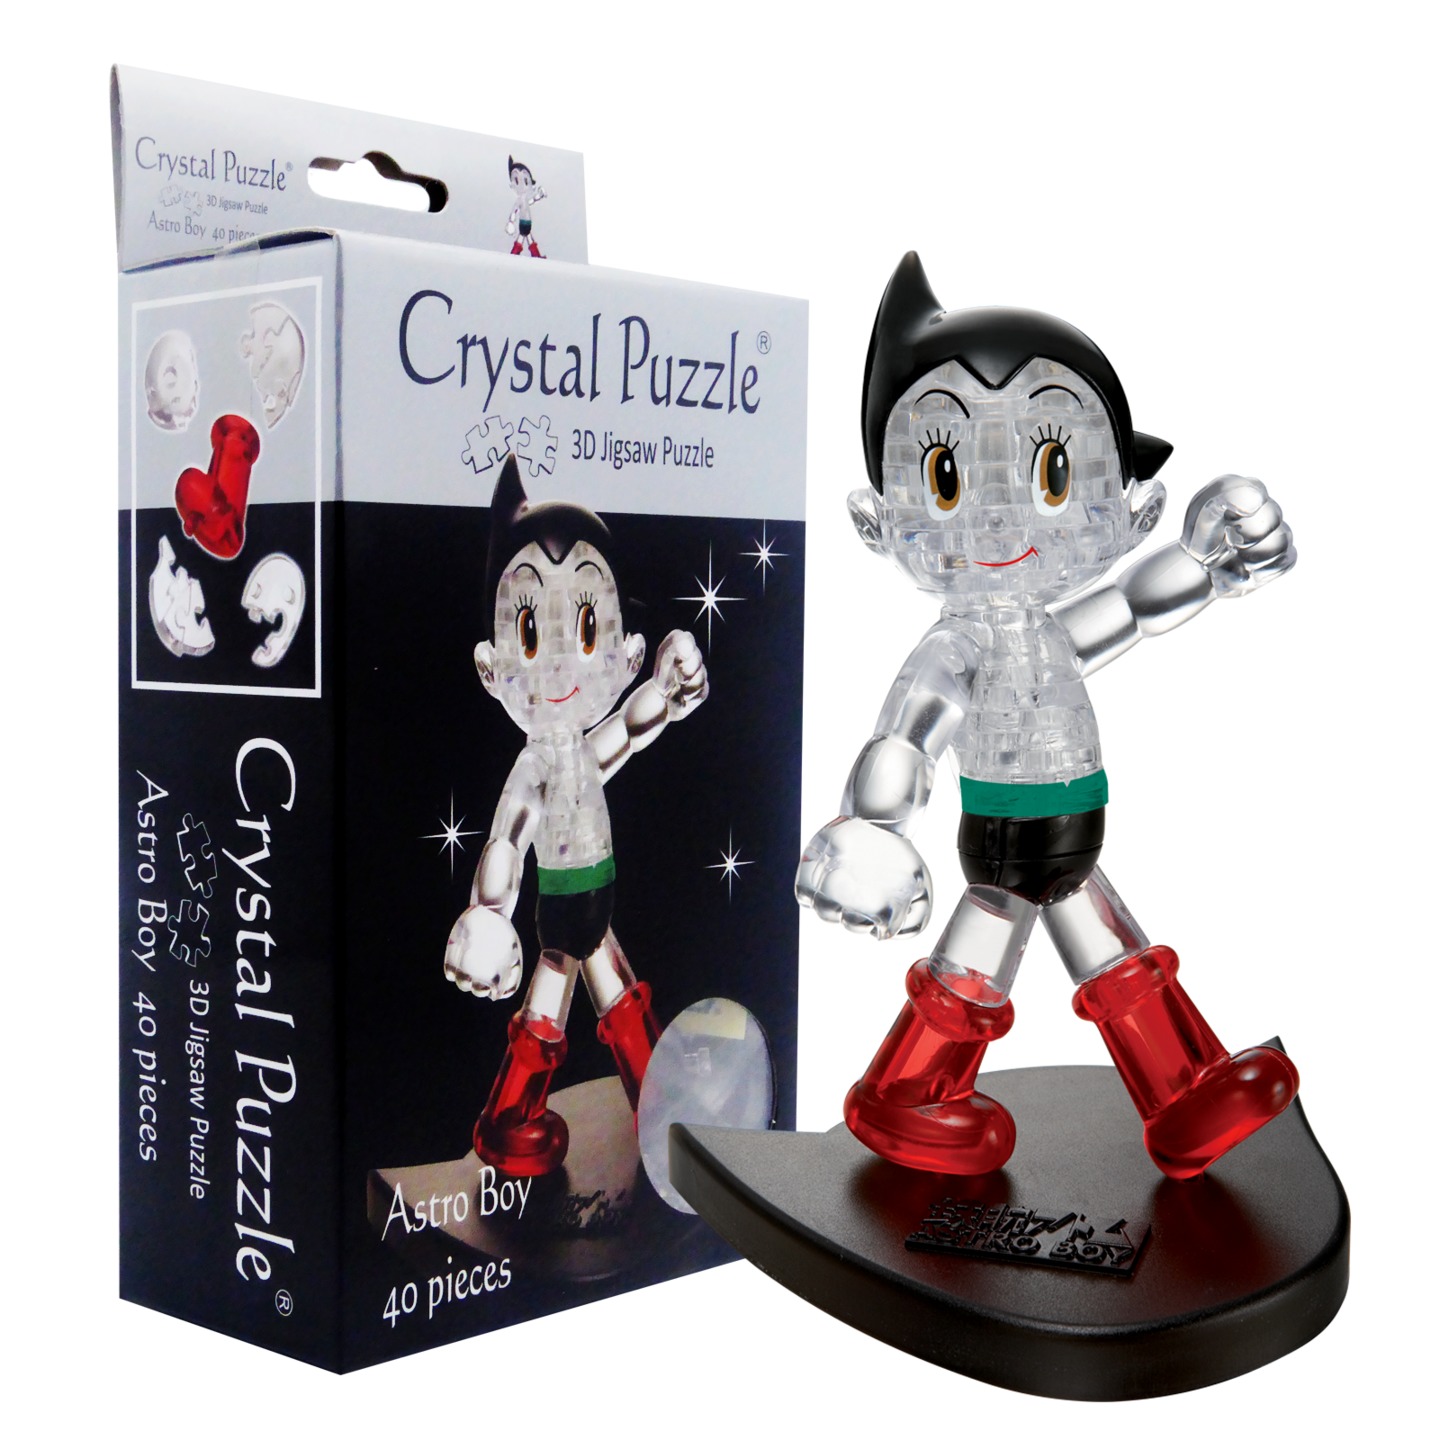 3D Crystal Puzzle  Astro Boy